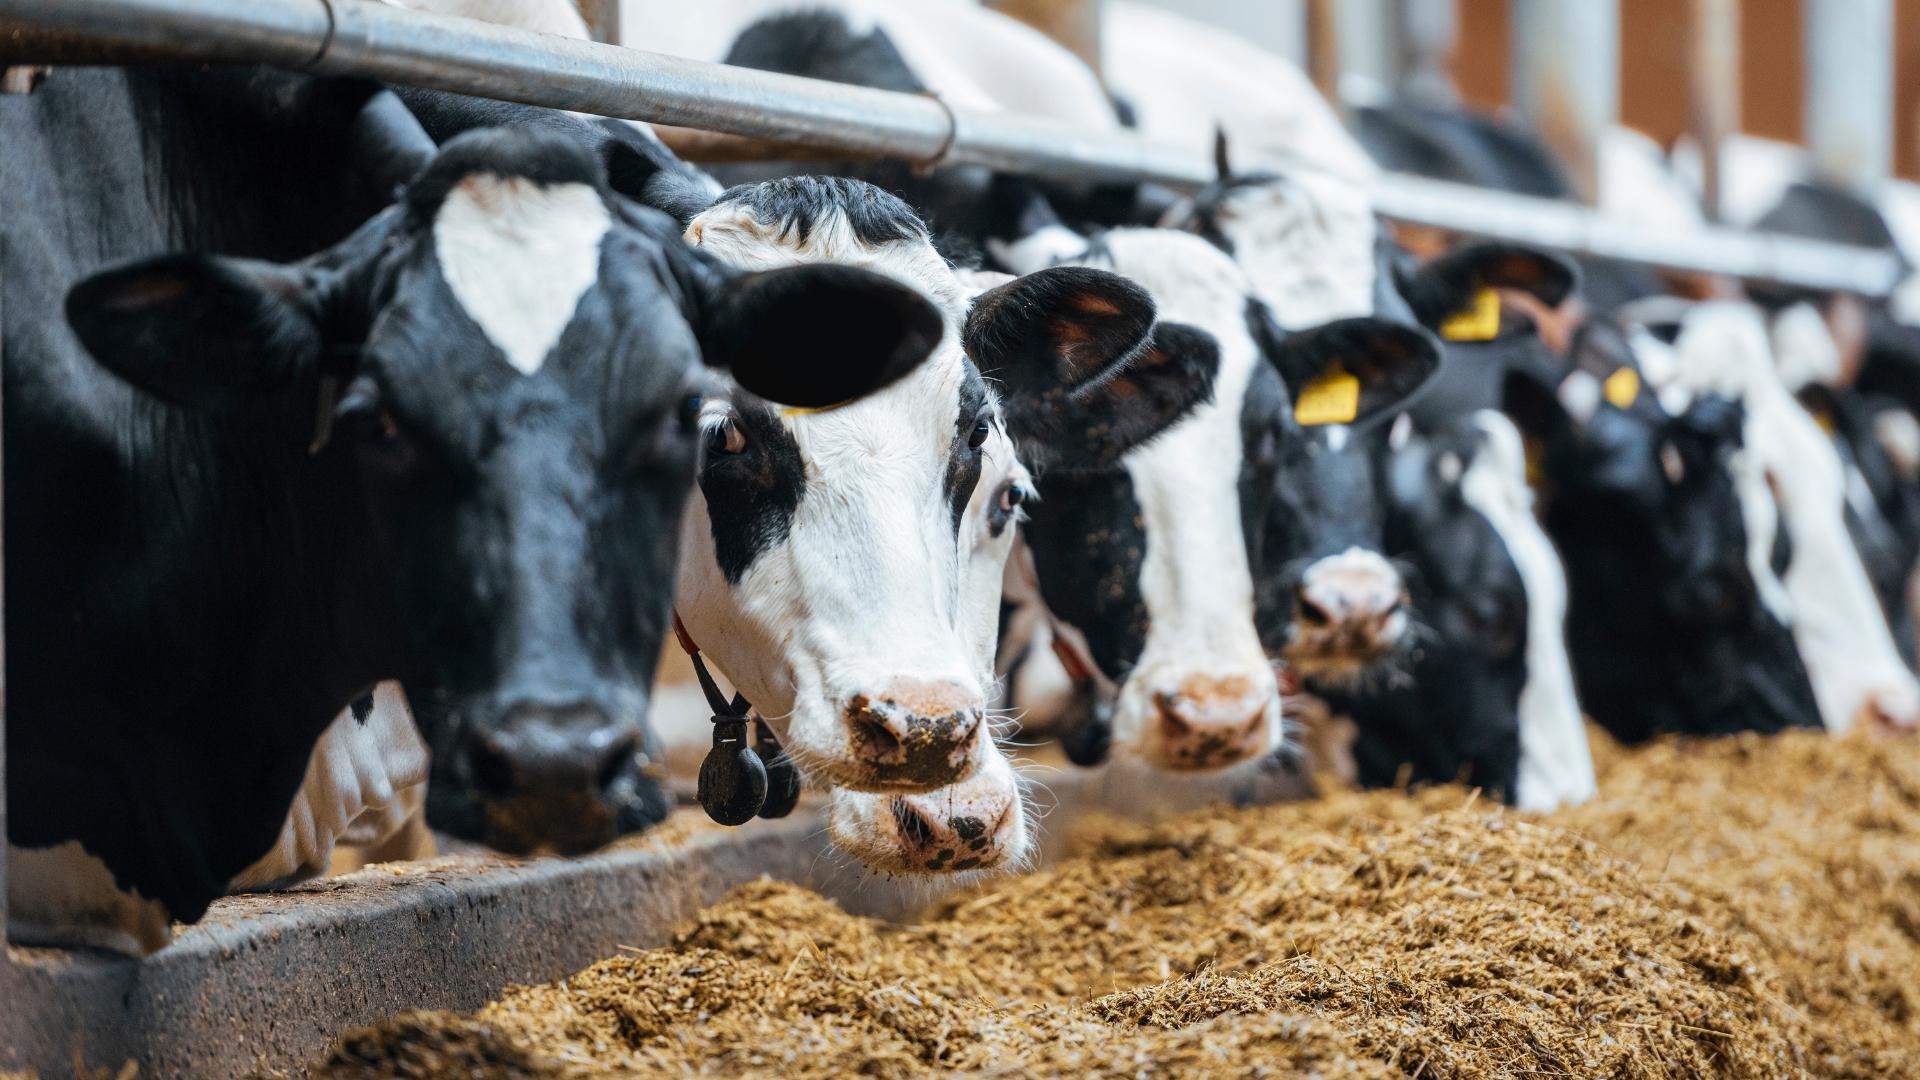 A row of cows feeding in a closed pen, their heads pushing through a bar to reach their feed.